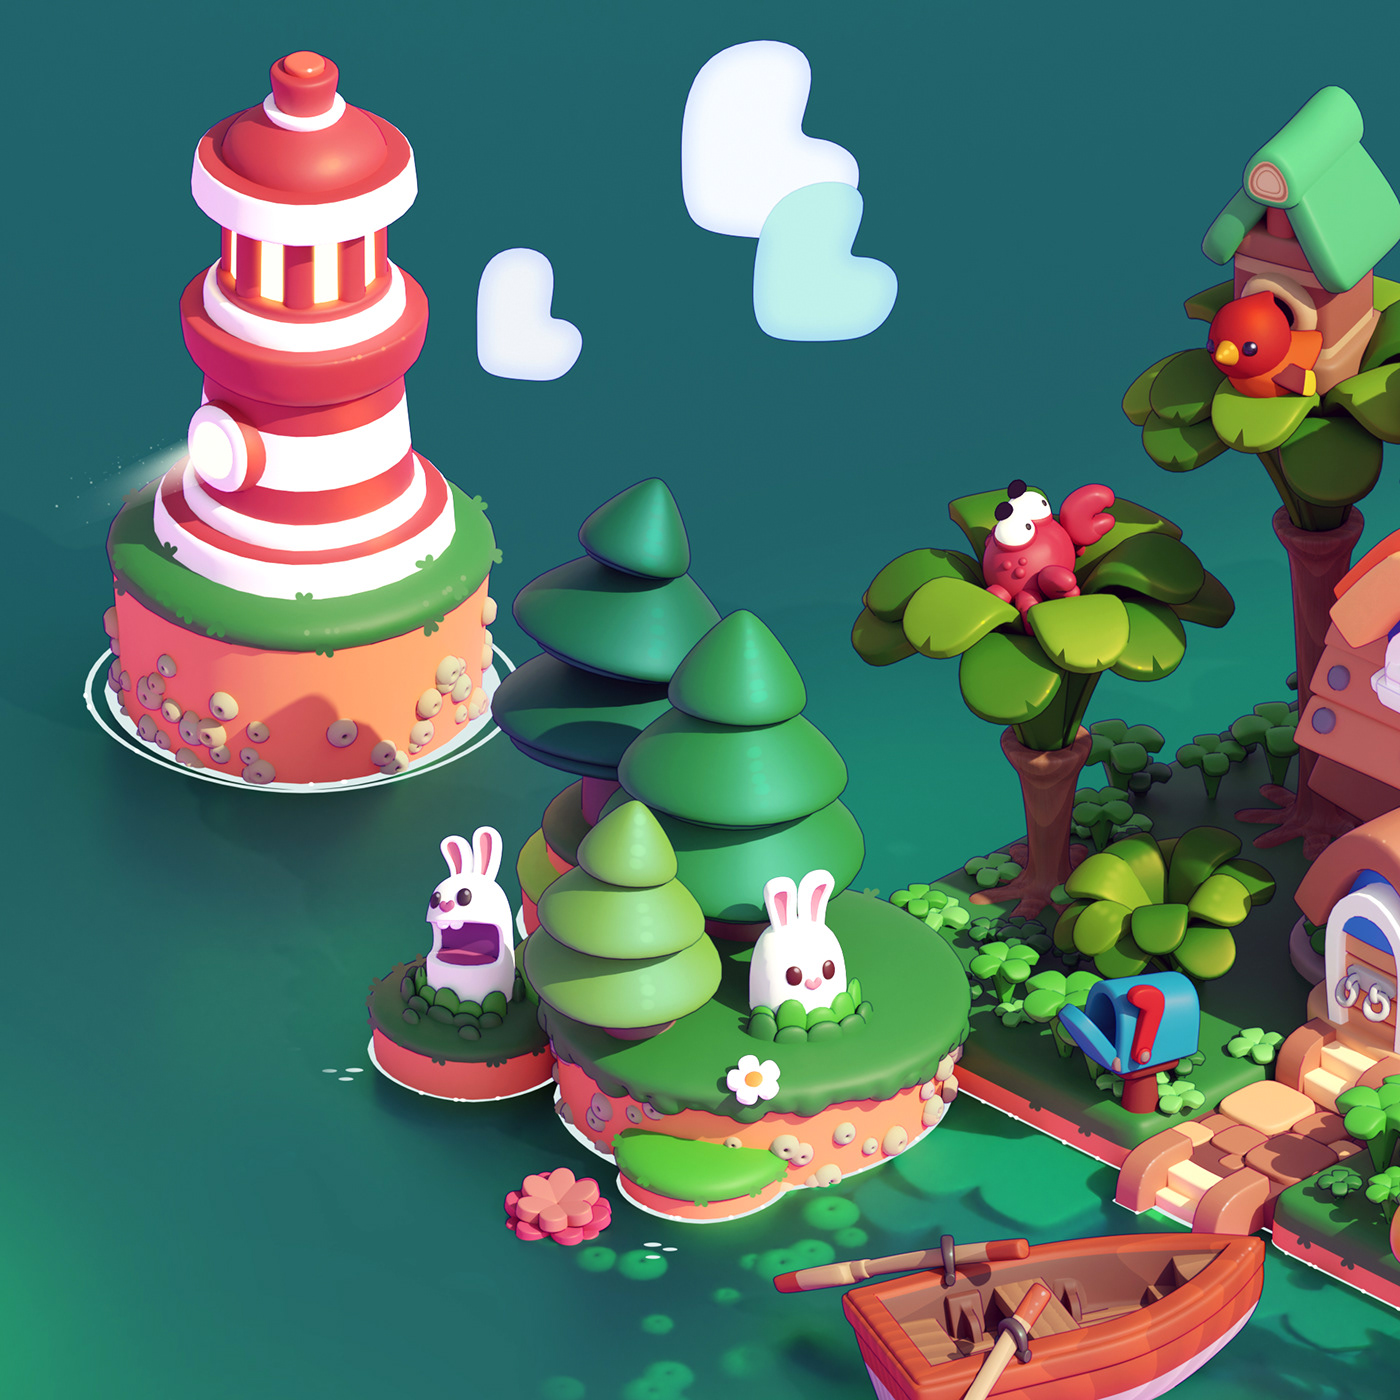 3D art blender cute environment Island Pet stylized